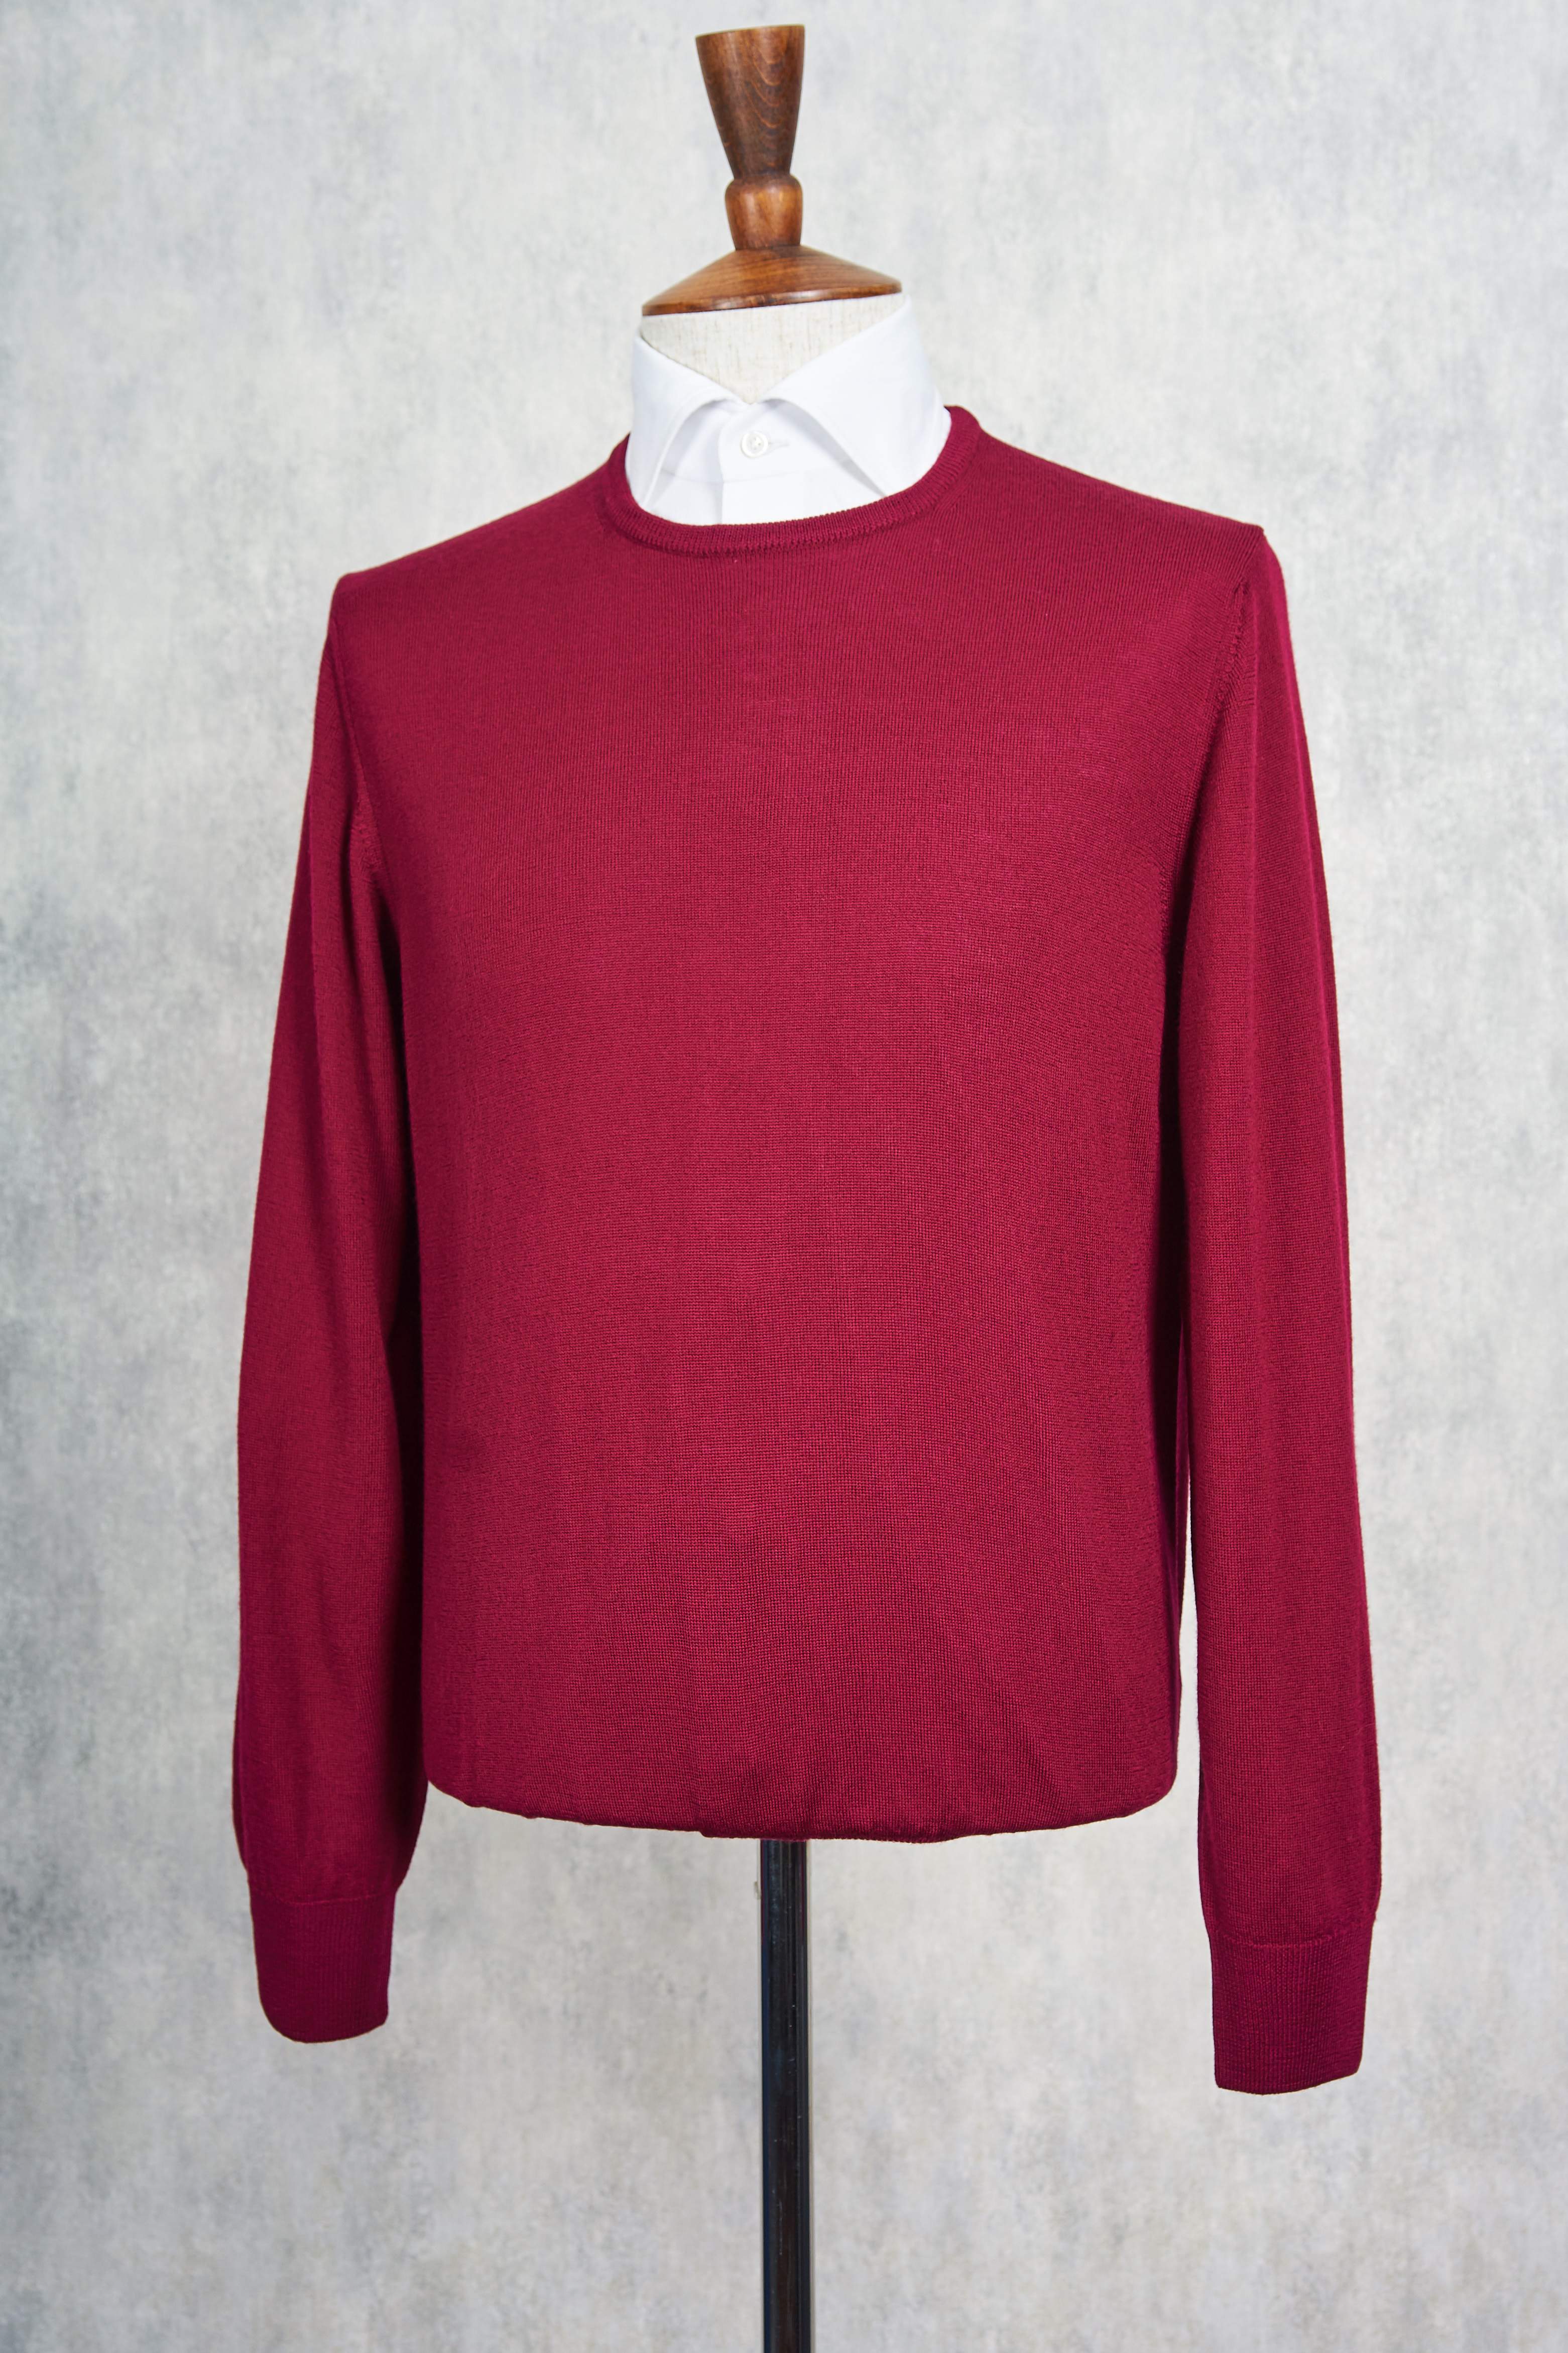 Ascot Chang Burgundy Extra-Fine Merino Wool Round Neck Sweater